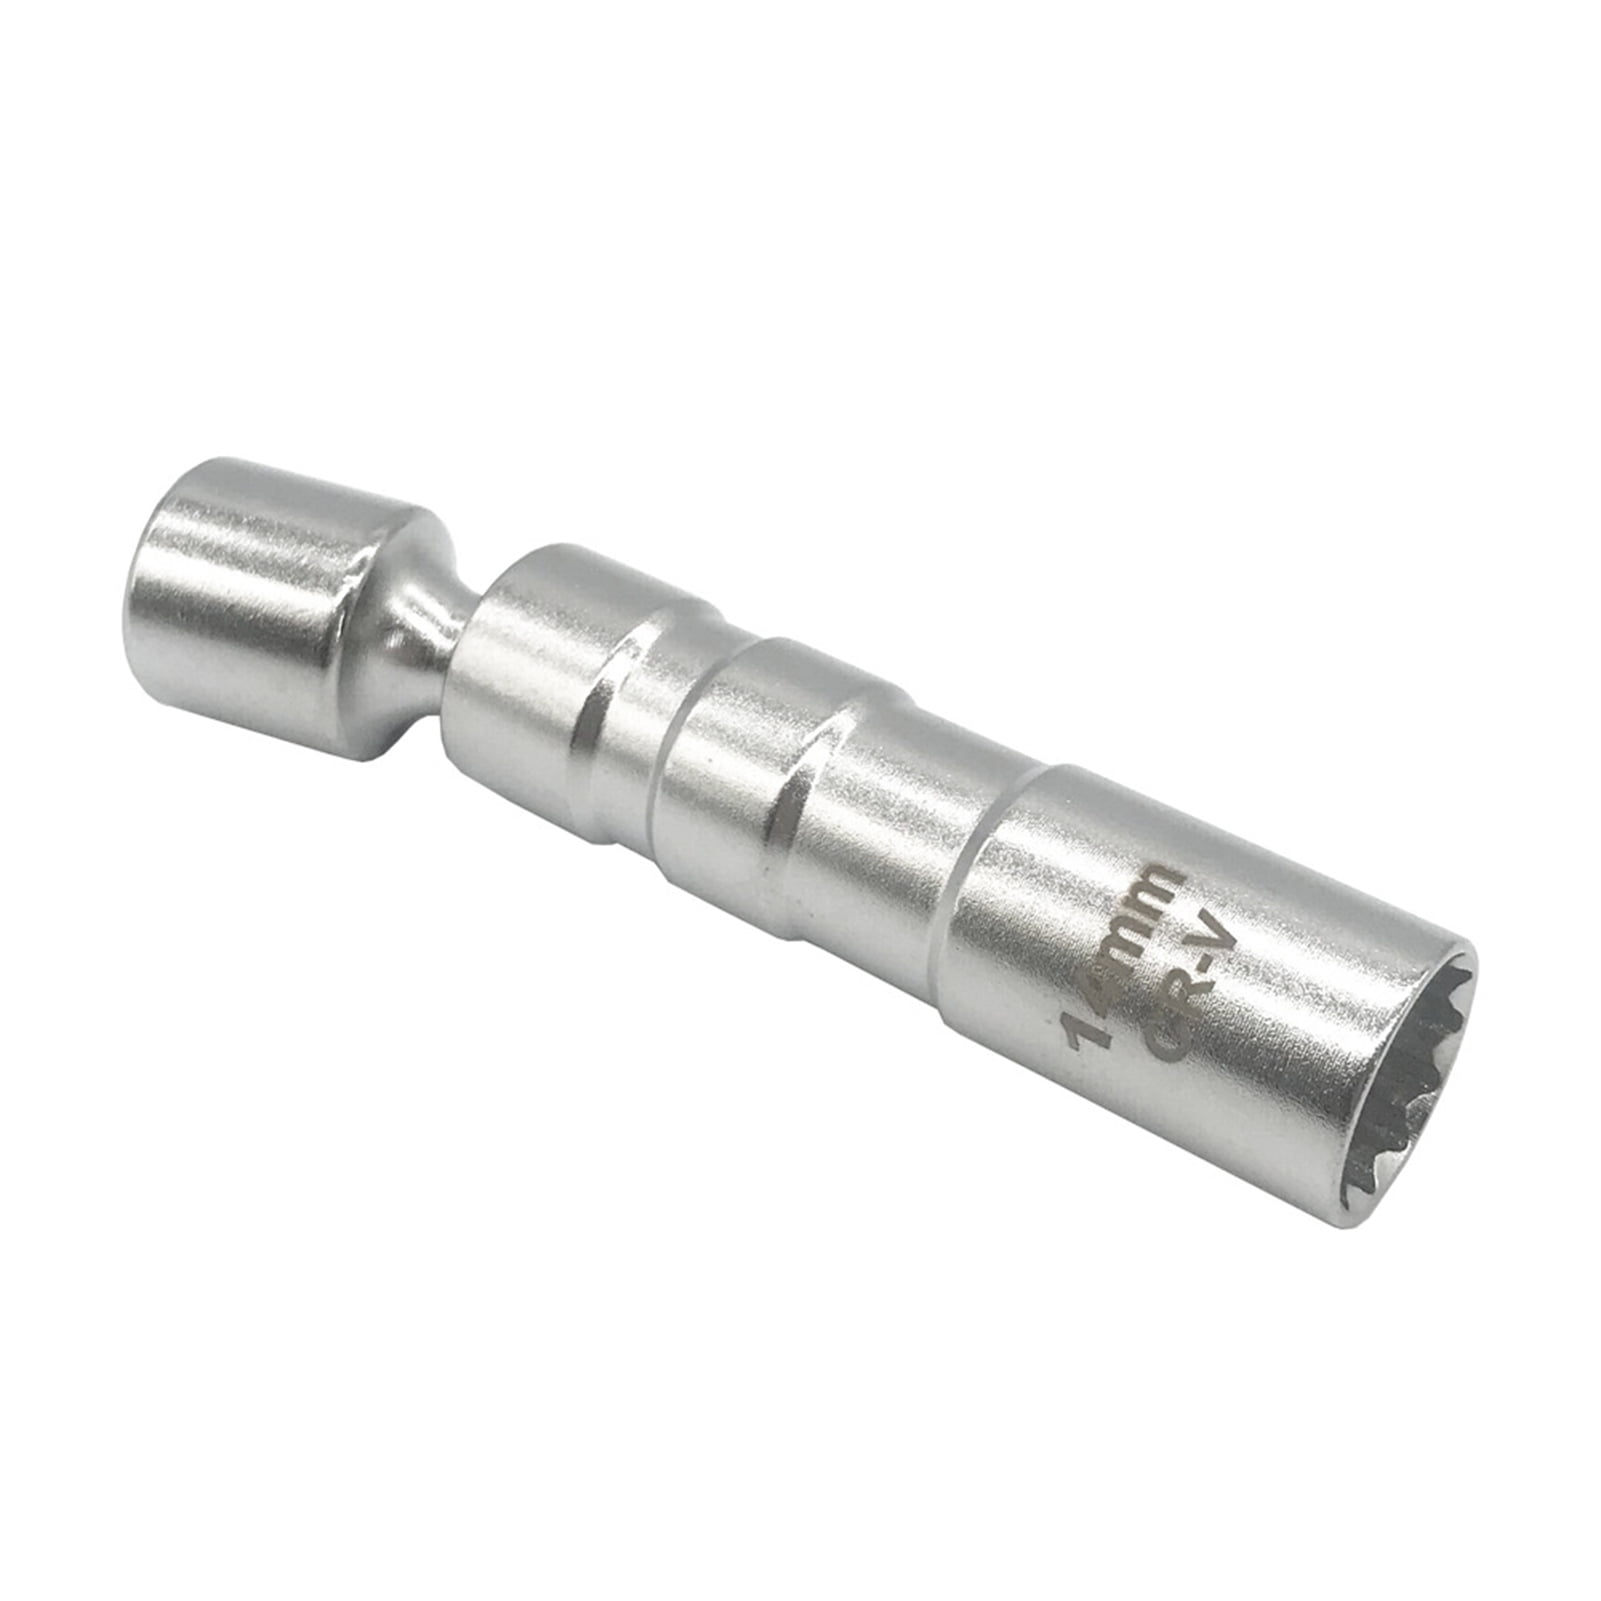 1x 9/16inch Heat Treated Chrome Vanadium Steel Swivel Magnetic Spark Plug Socket 